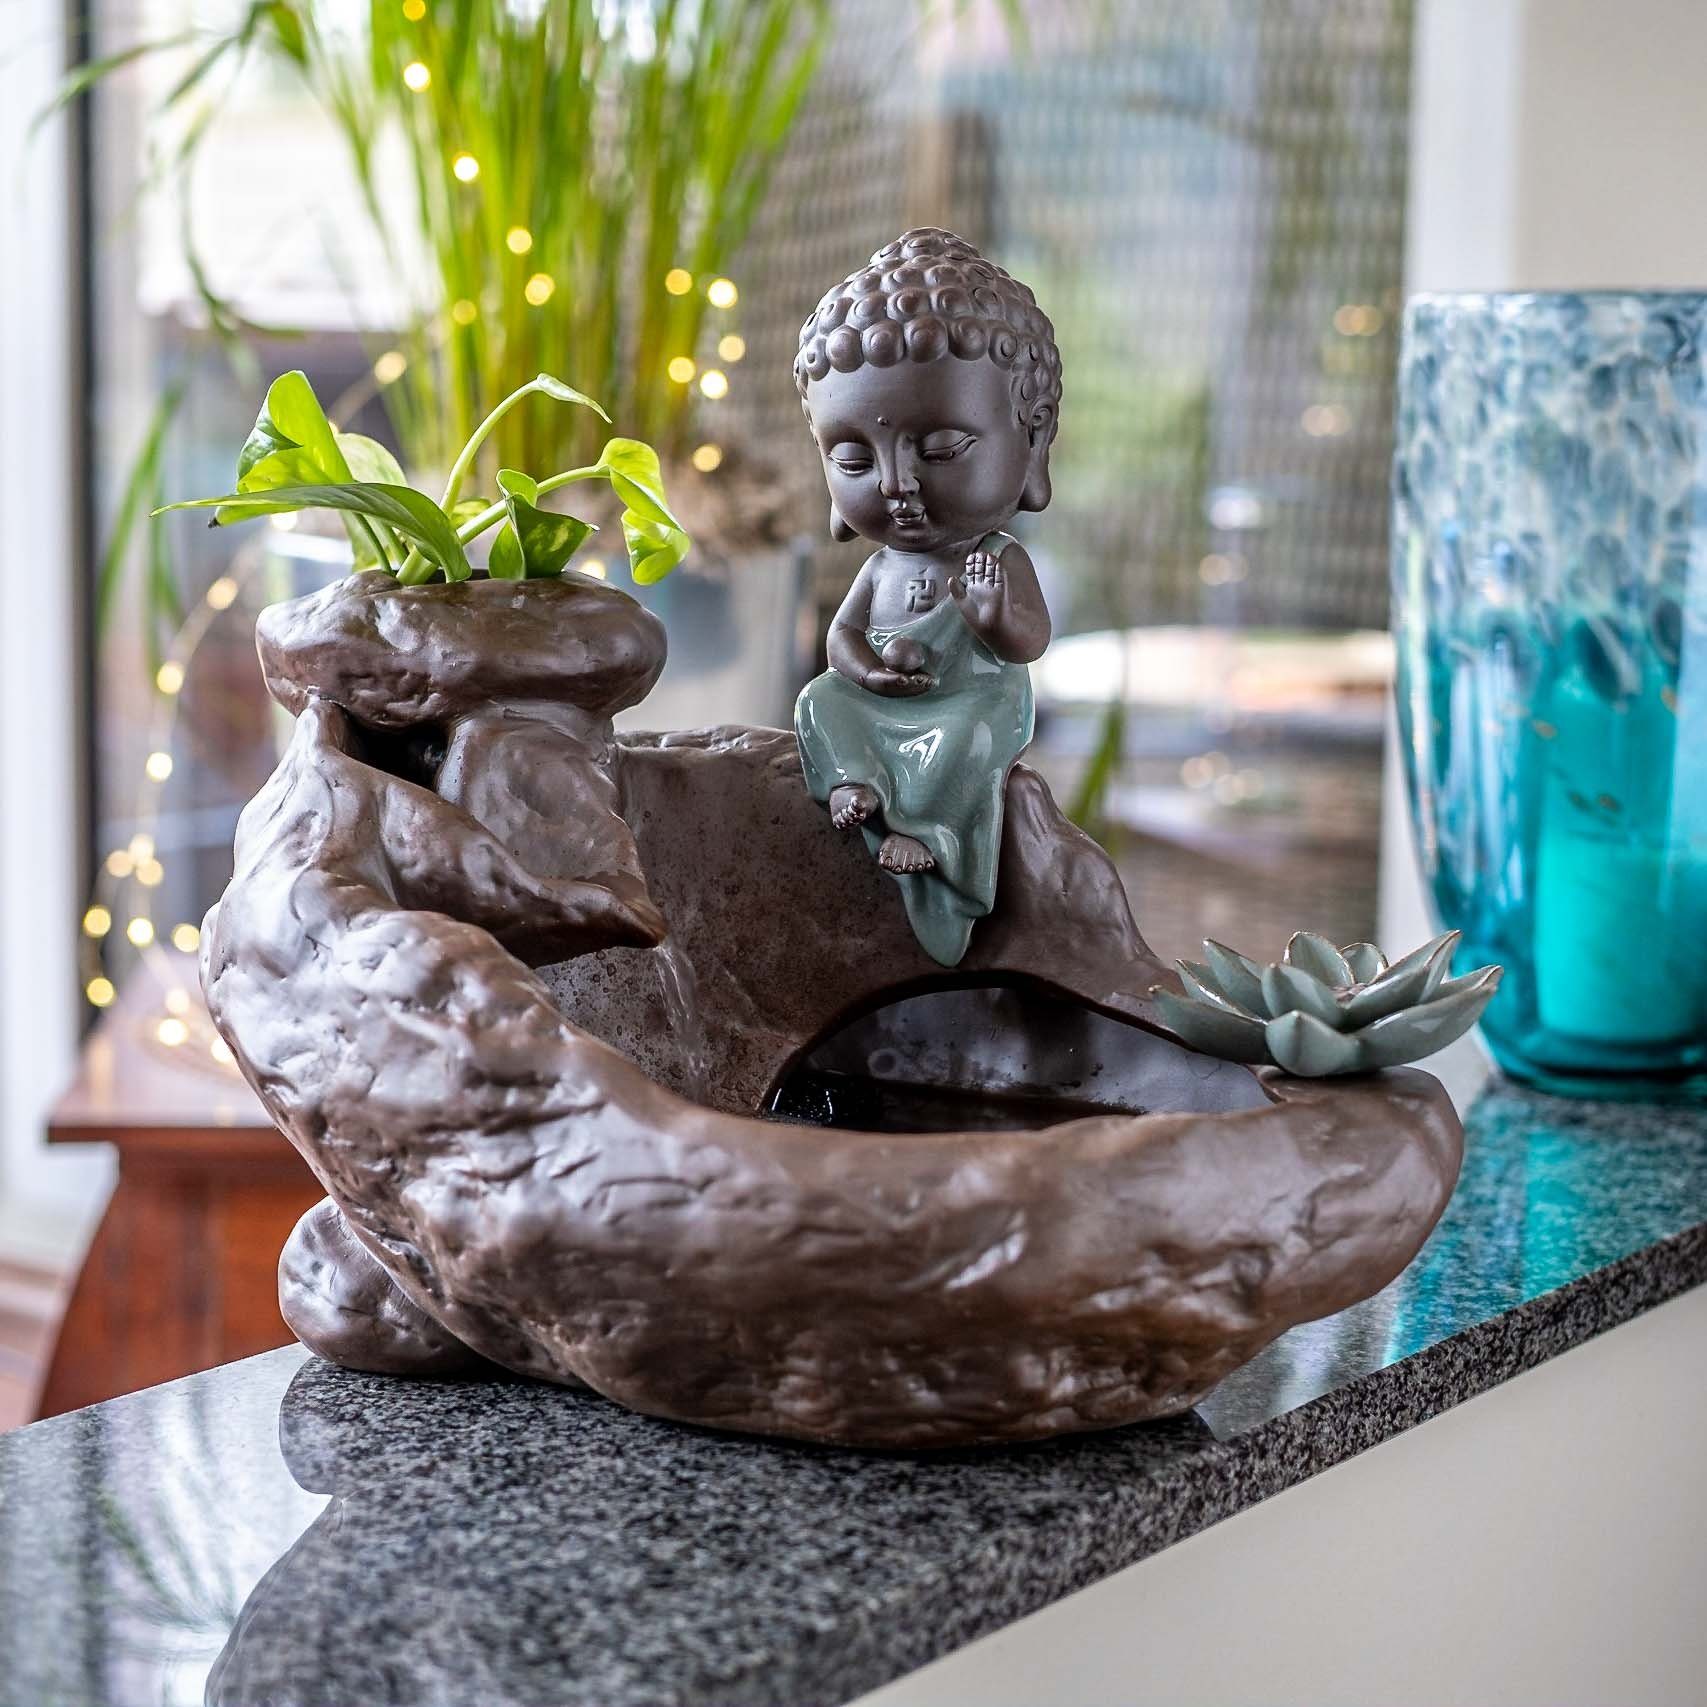 IDYL Zimmerbrunnen Keramik Zimmerbrunnen IDYL mit Buddha-Figur aus